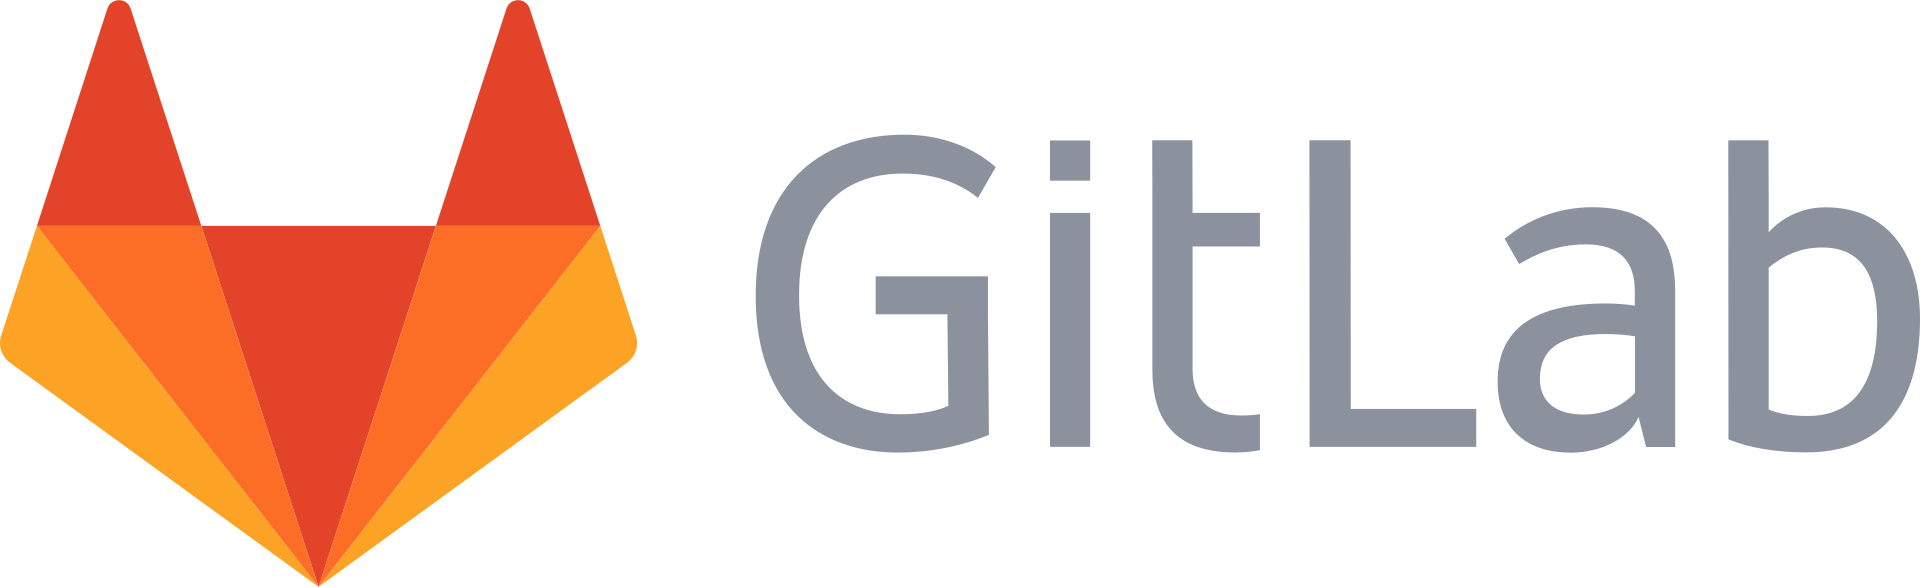 Gitlab - Веб-инструмент жизненного цикла DevOps с открытым исходным кодом